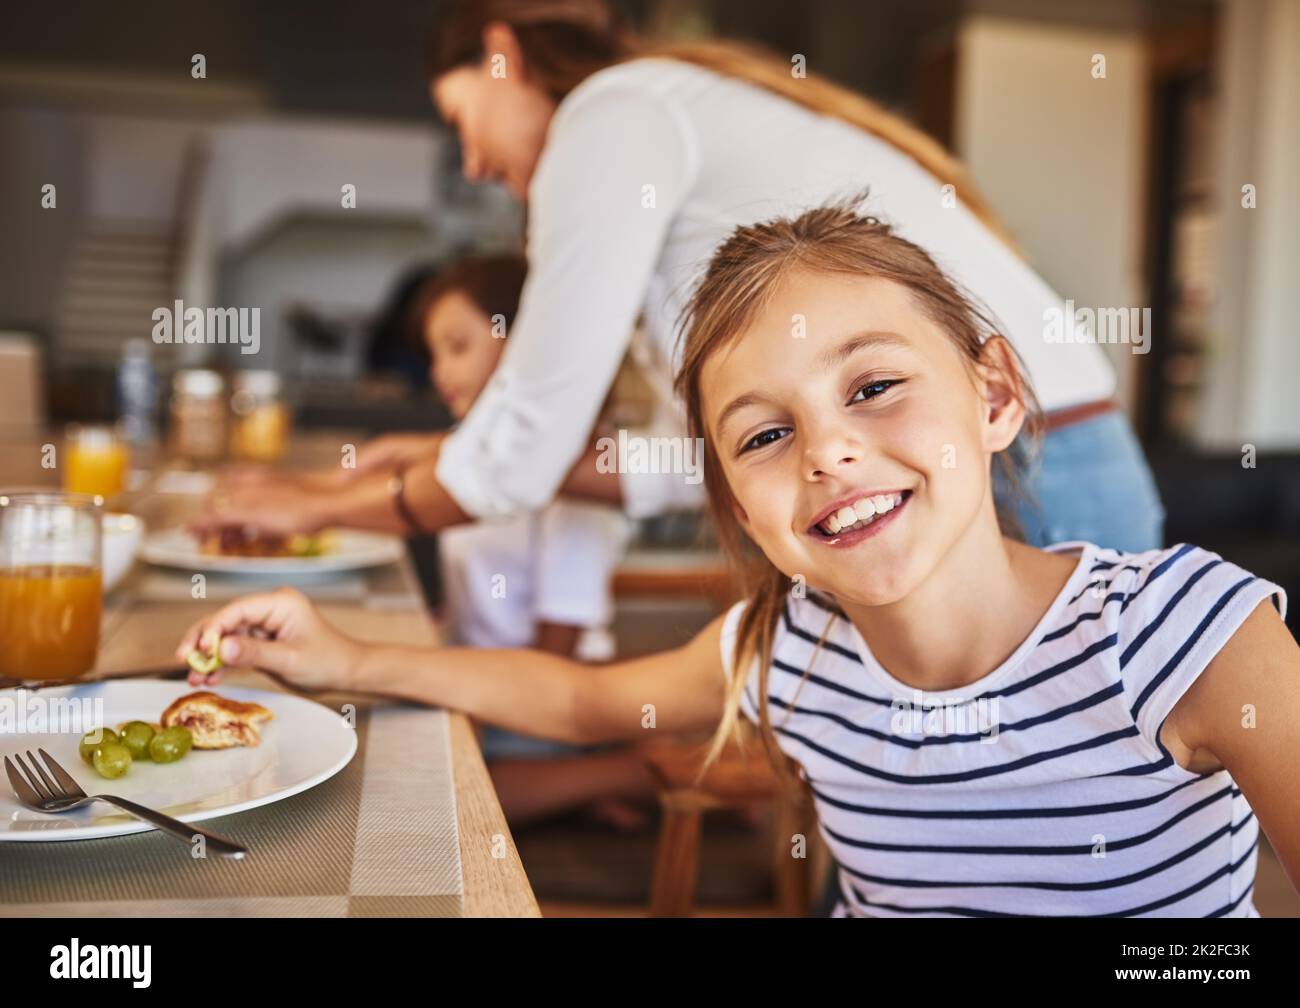 Gustando una deliziosa colazione con la sua gente preferita. Ritratto di una bambina che ha la colazione con la sua famiglia in background. Foto Stock